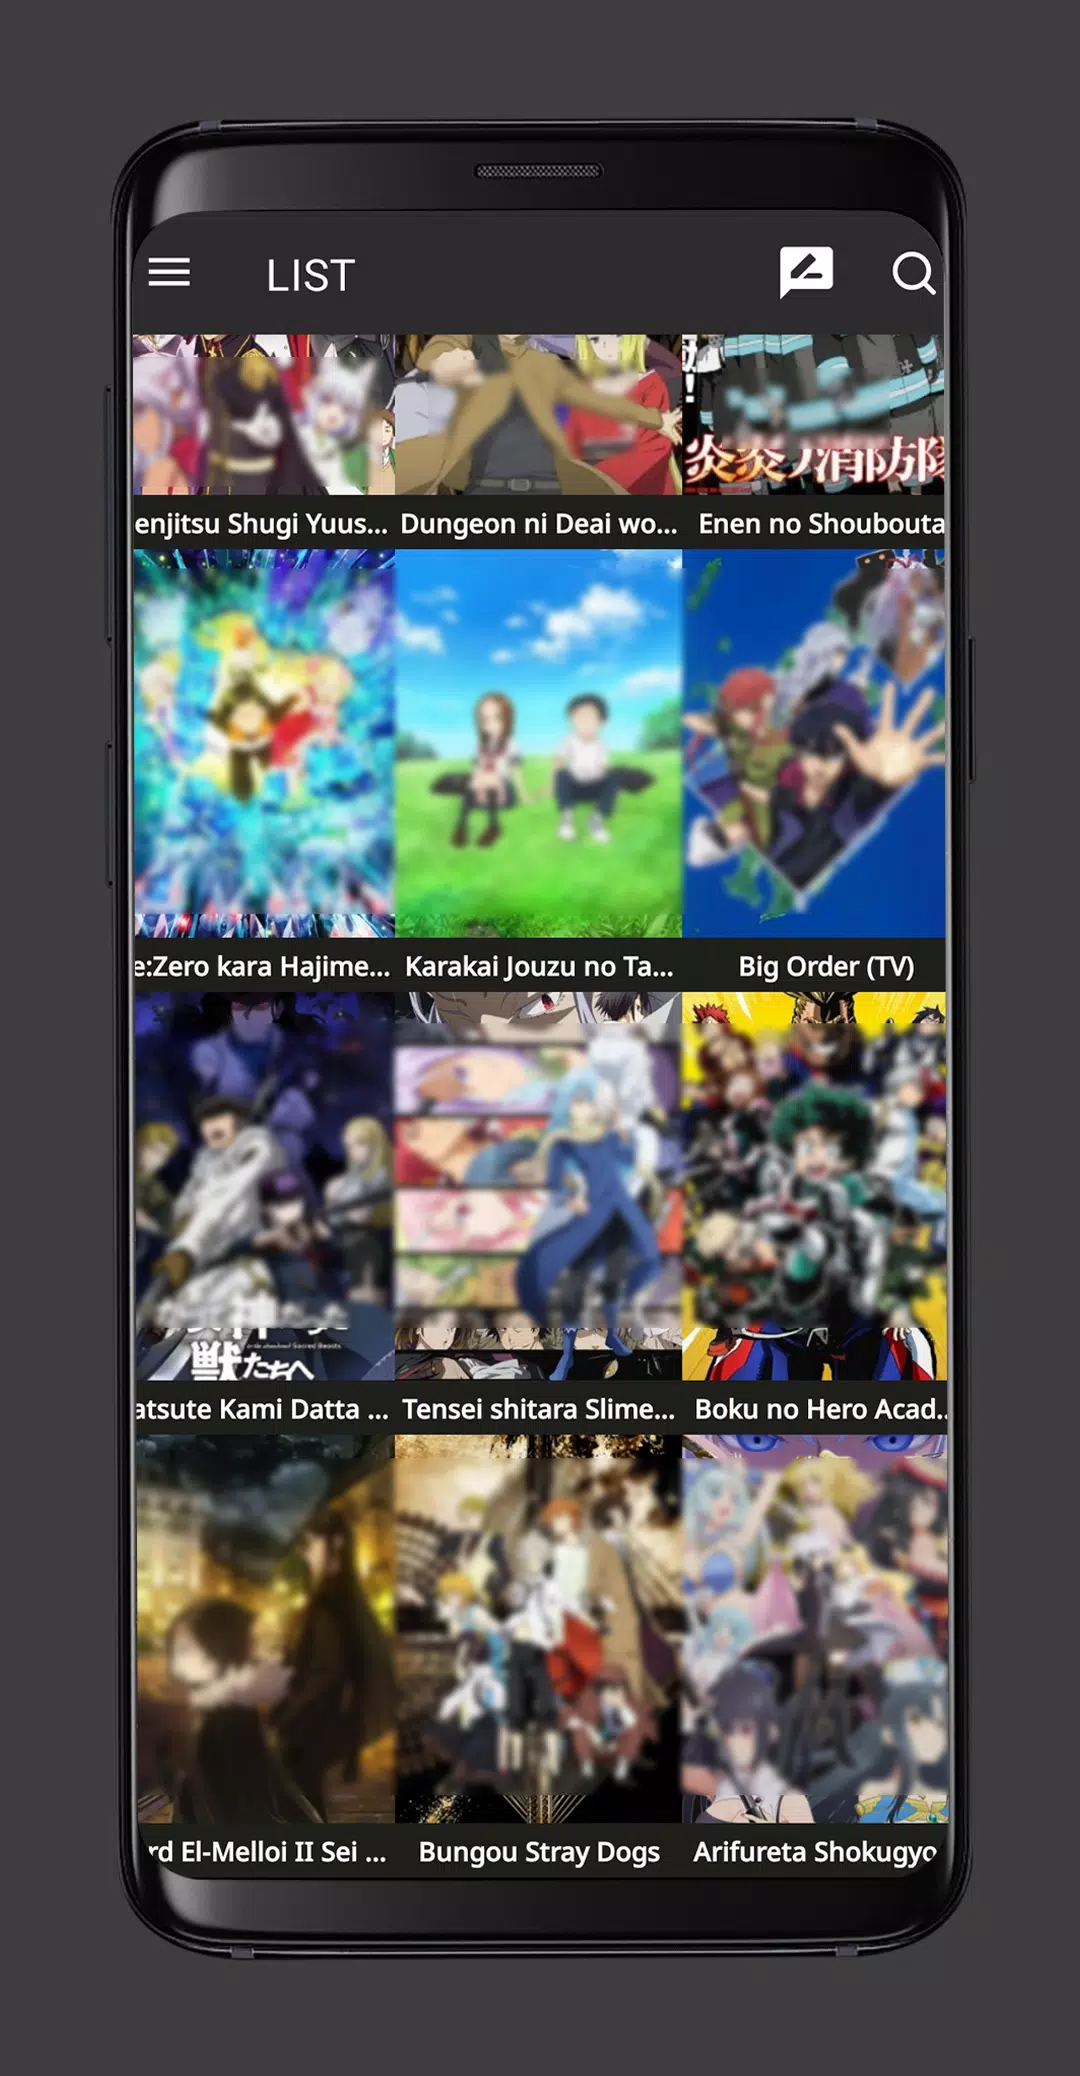 Kiss Anime Online Sub & Dub v1.0 APK Download - FileCR